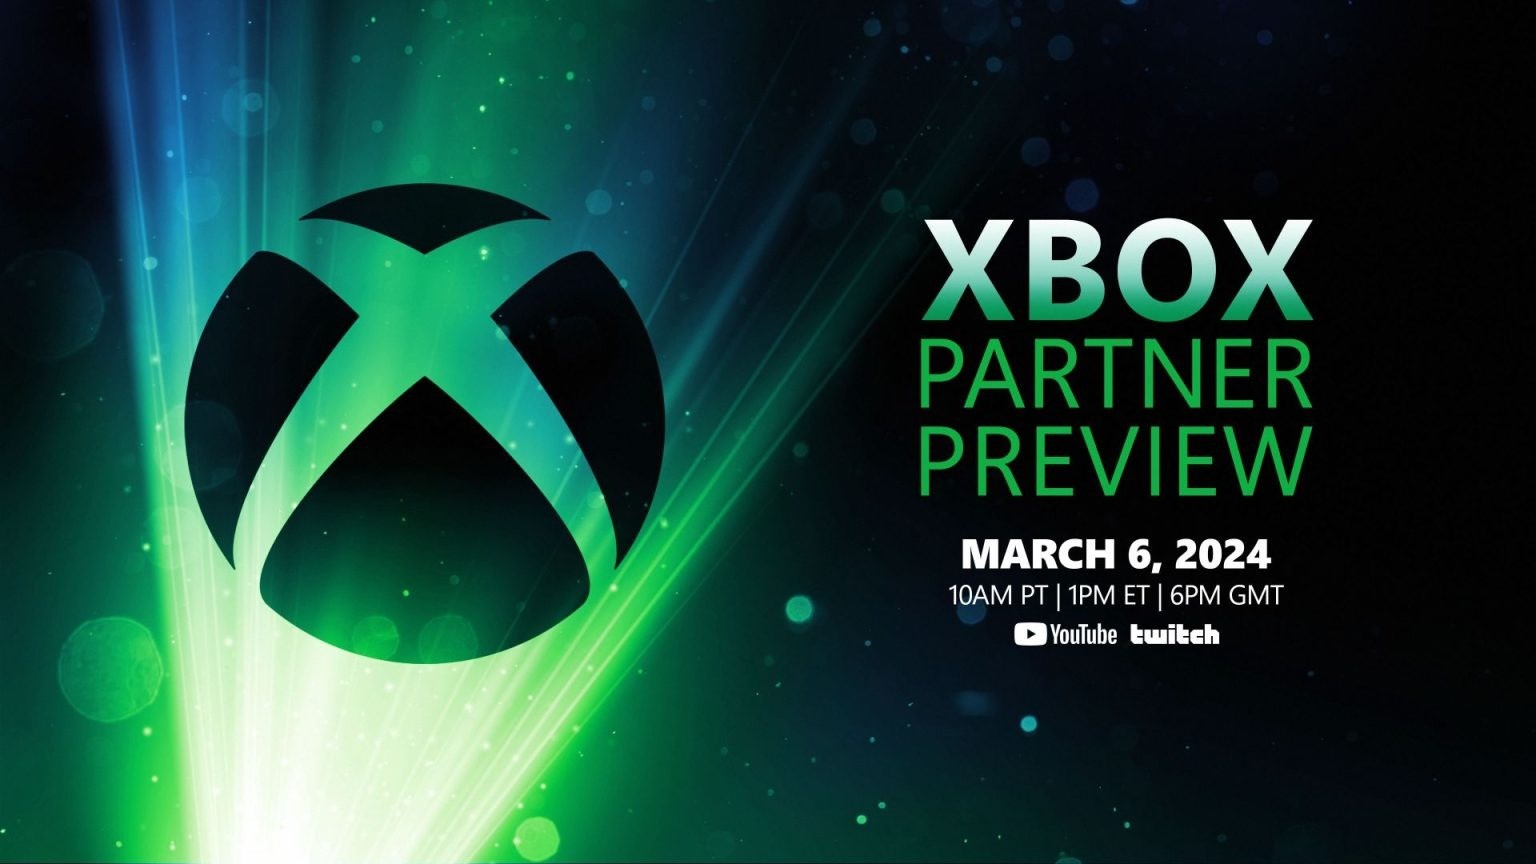 微软将于3月6日举行Xbox合作伙伴预览活动